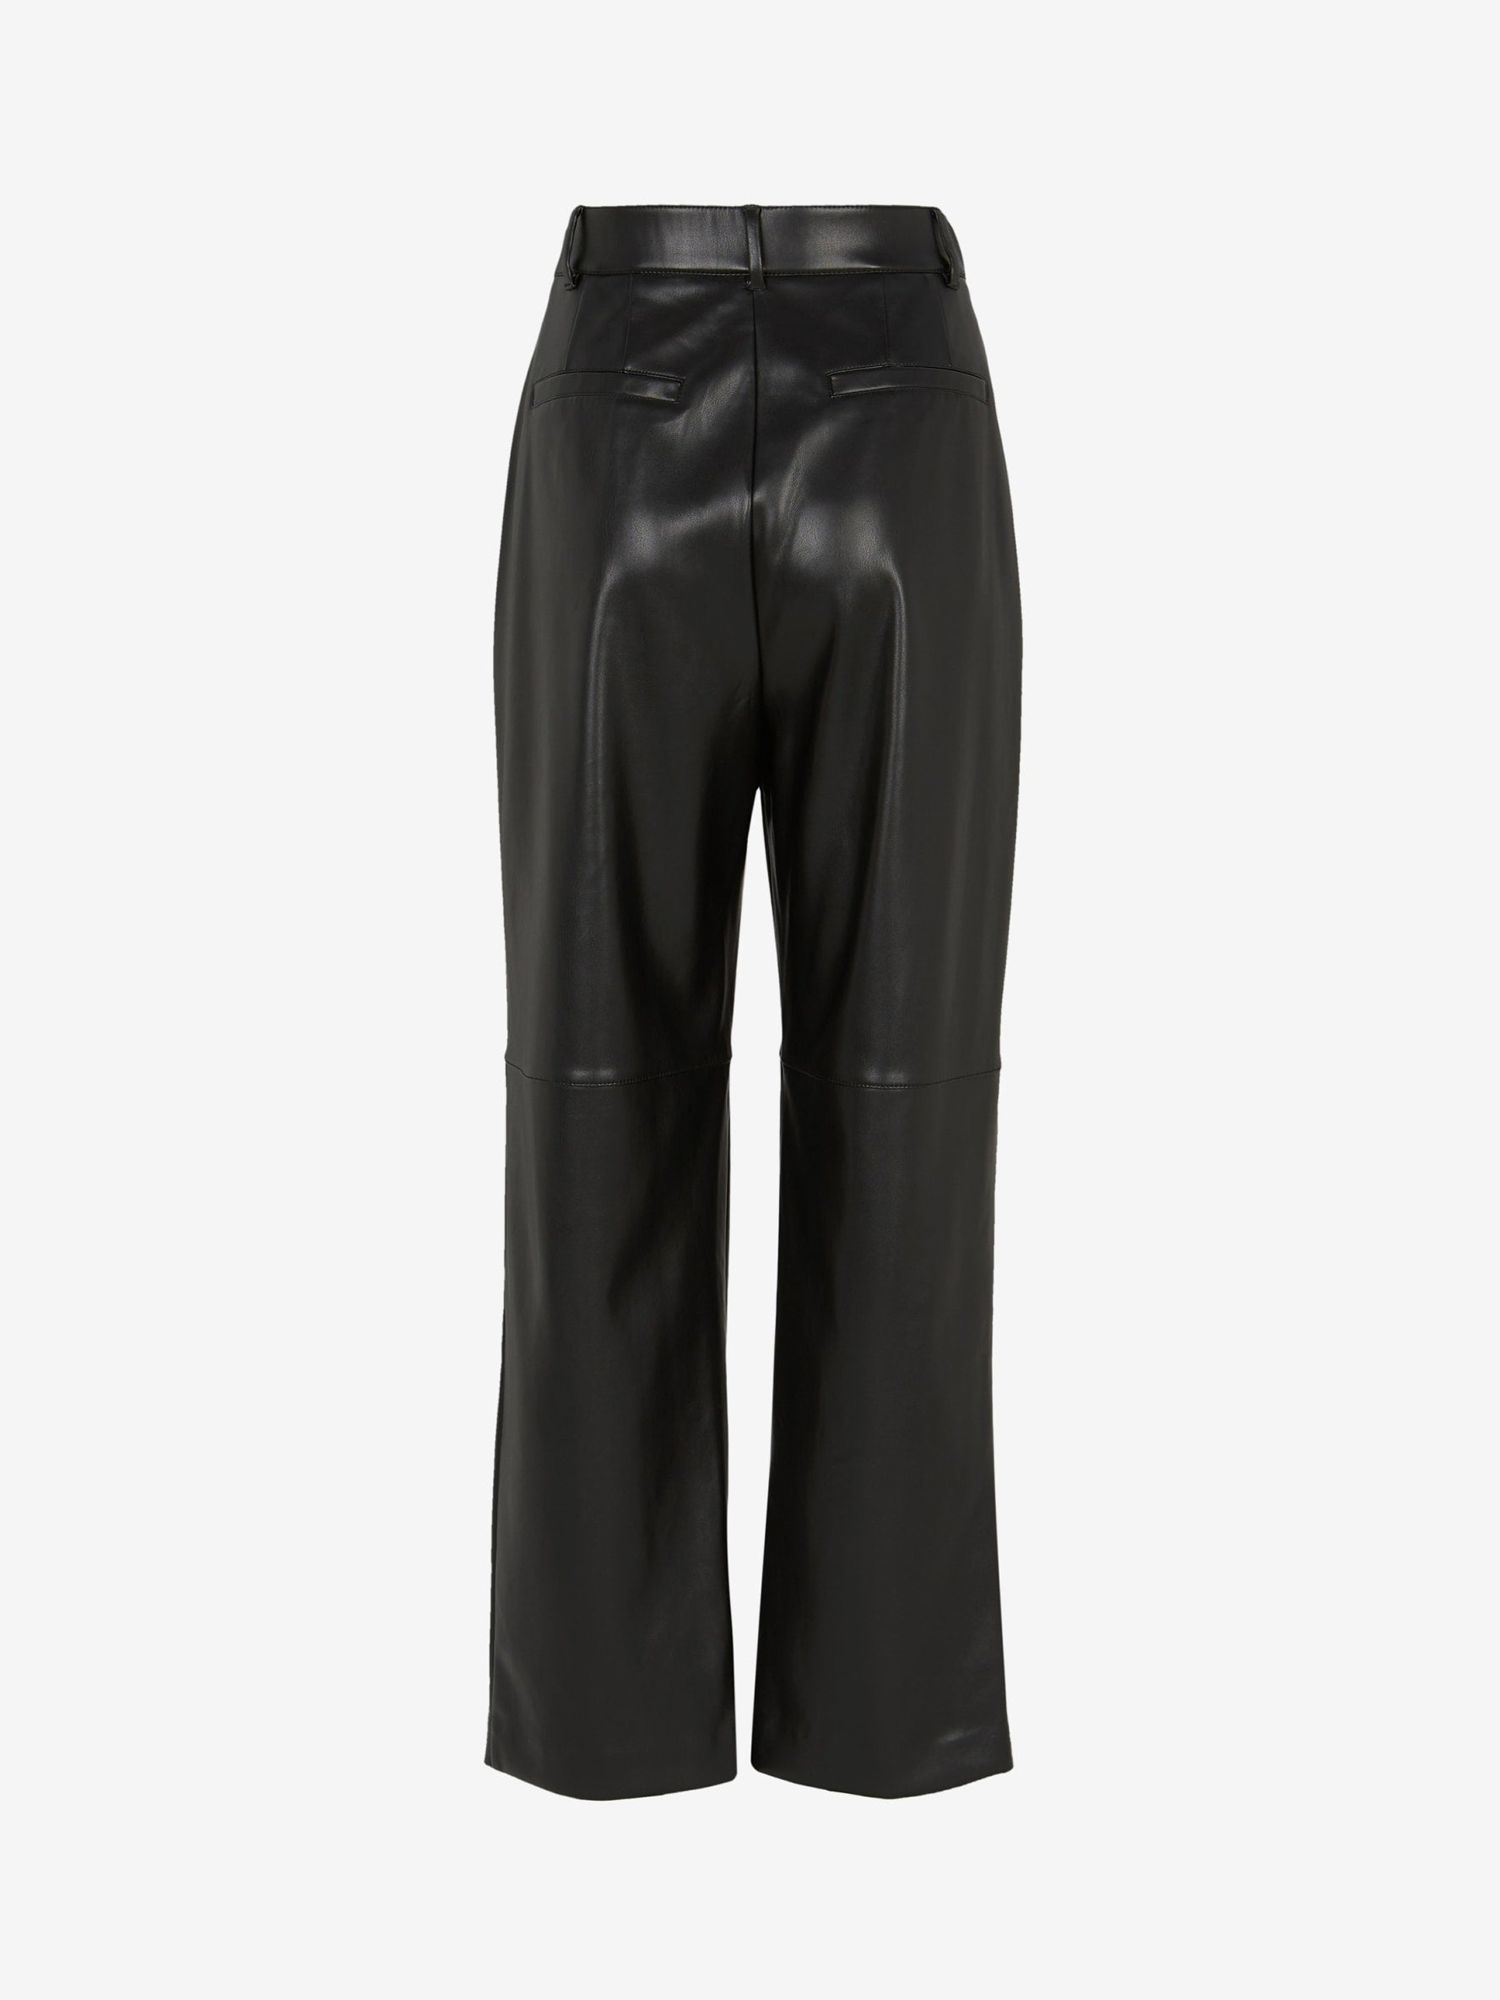 Mint Velvet Pleat Front Faux Leather Trousers, Black, 12R